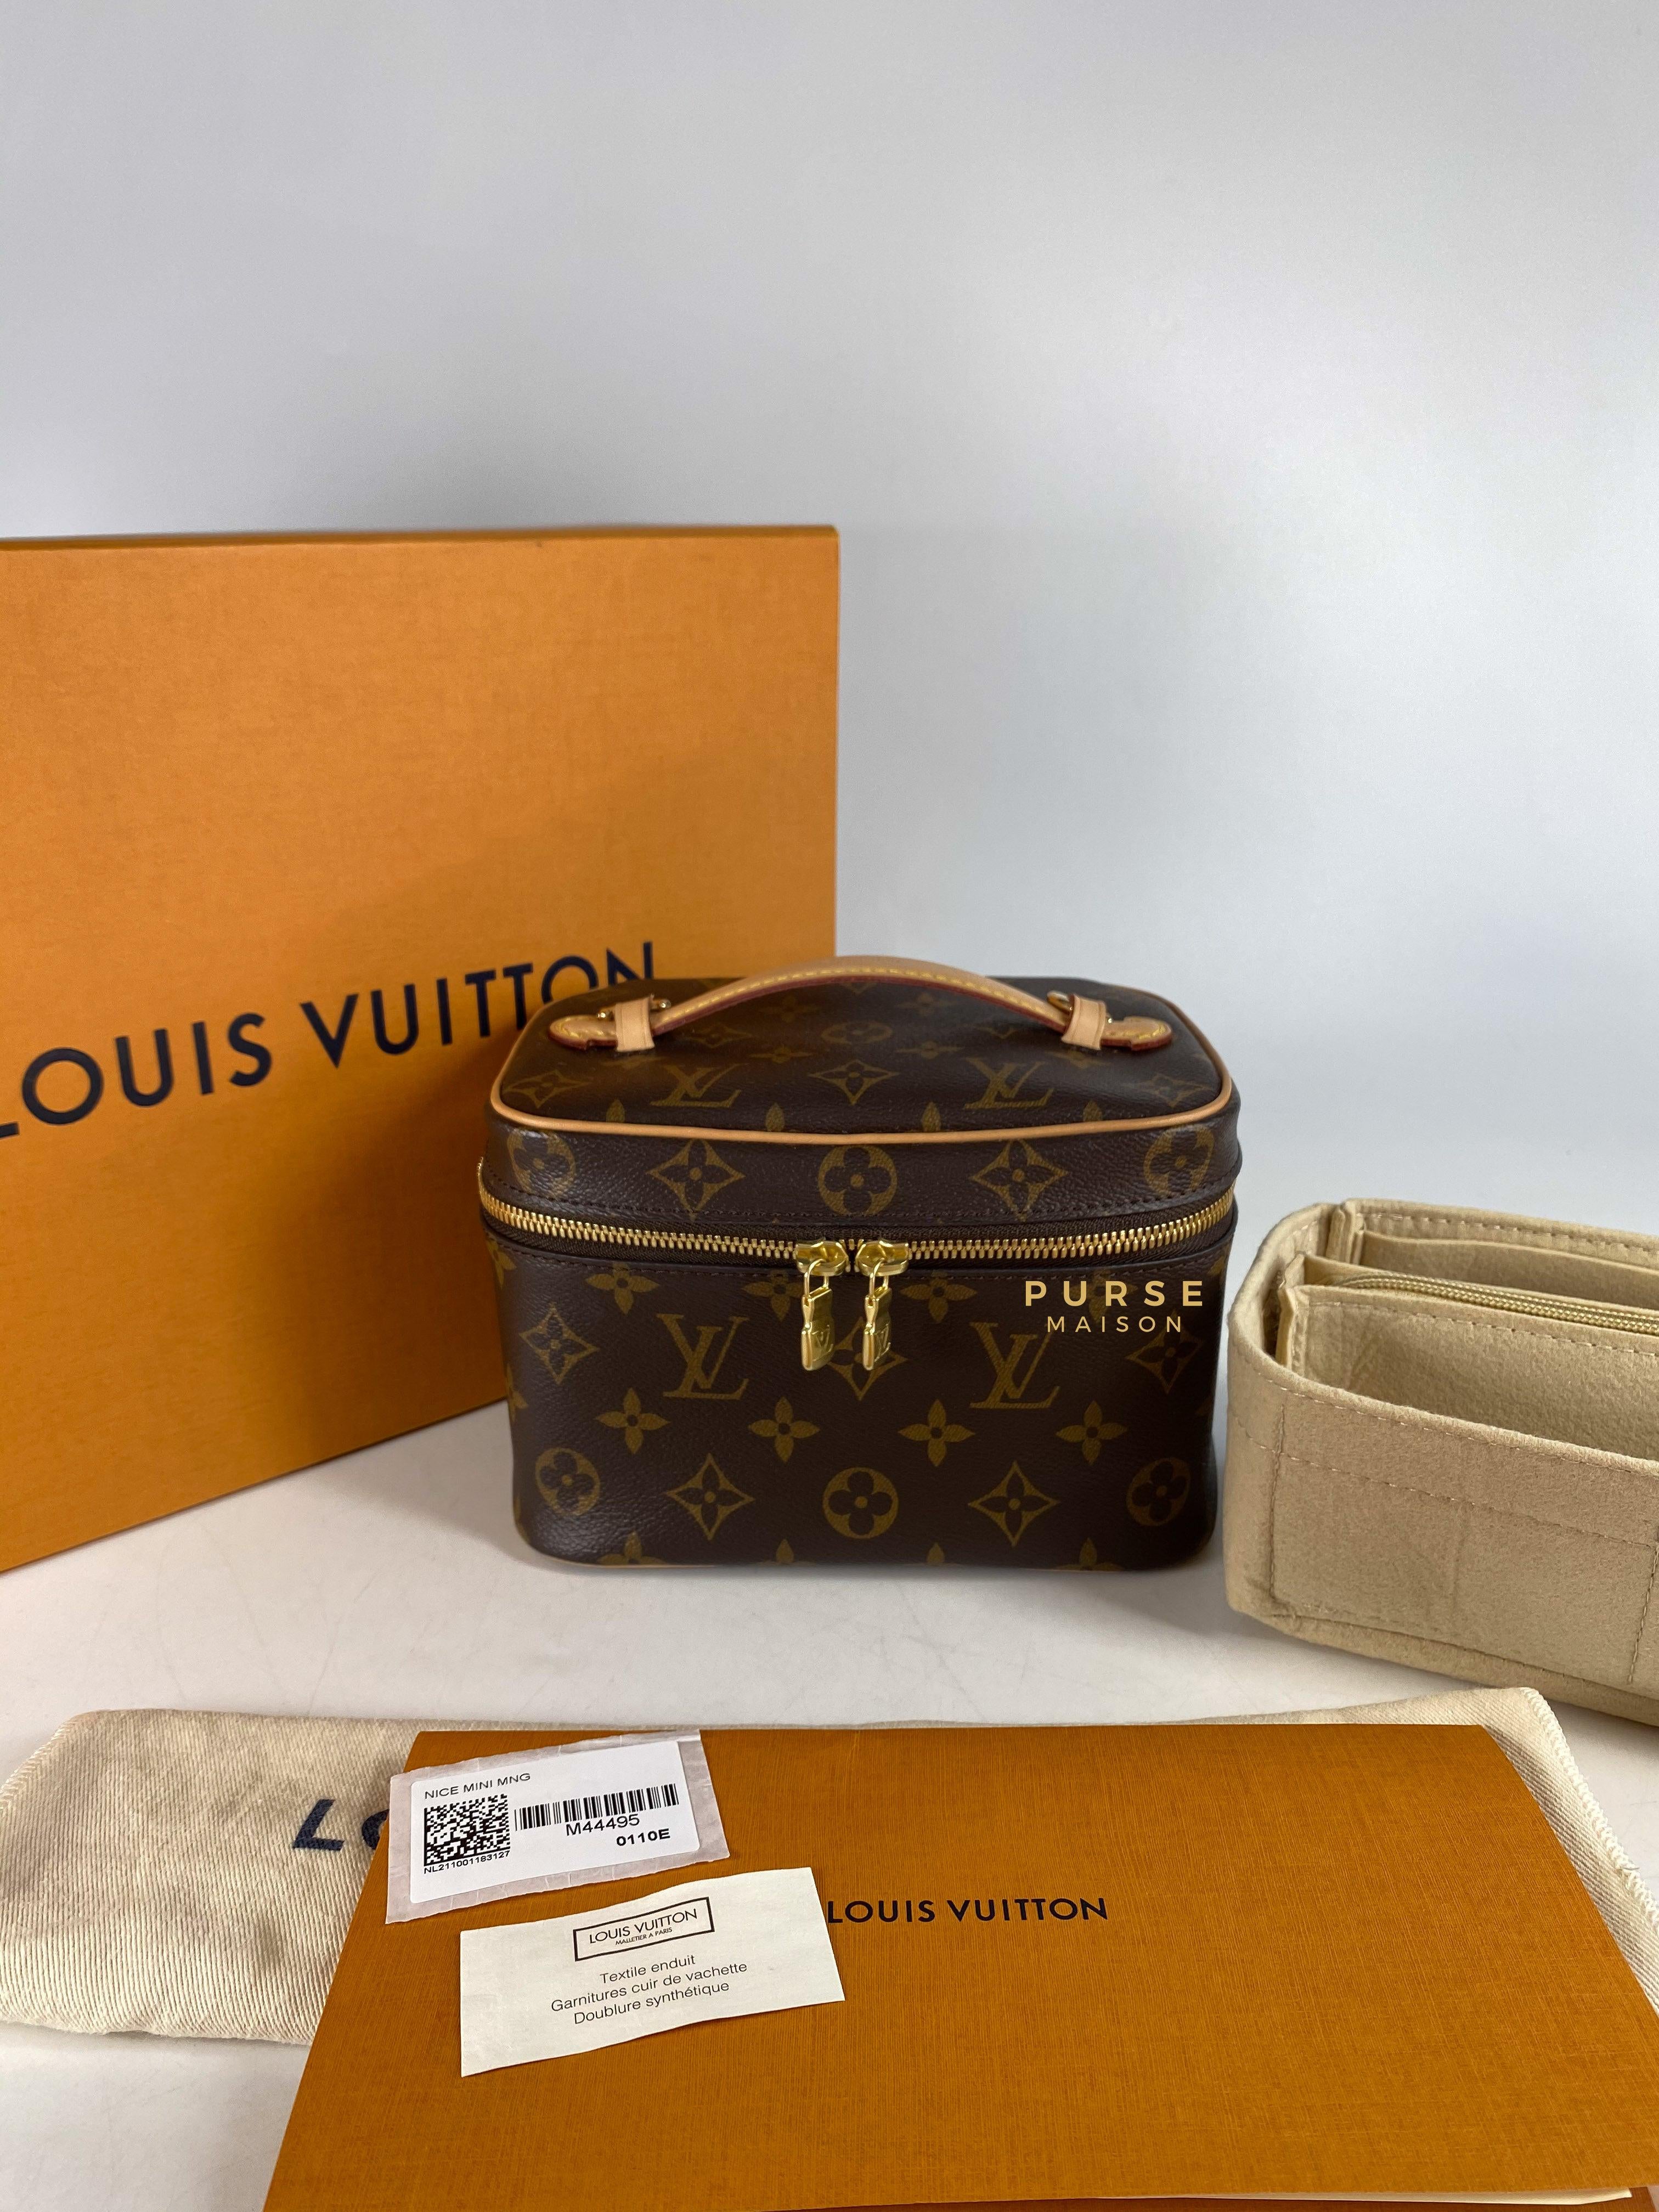 Louis Vuitton Nice Mini Toiletry Pouch in Monogram Canvas (Microchip) | Purse Maison Luxury Bags Shop